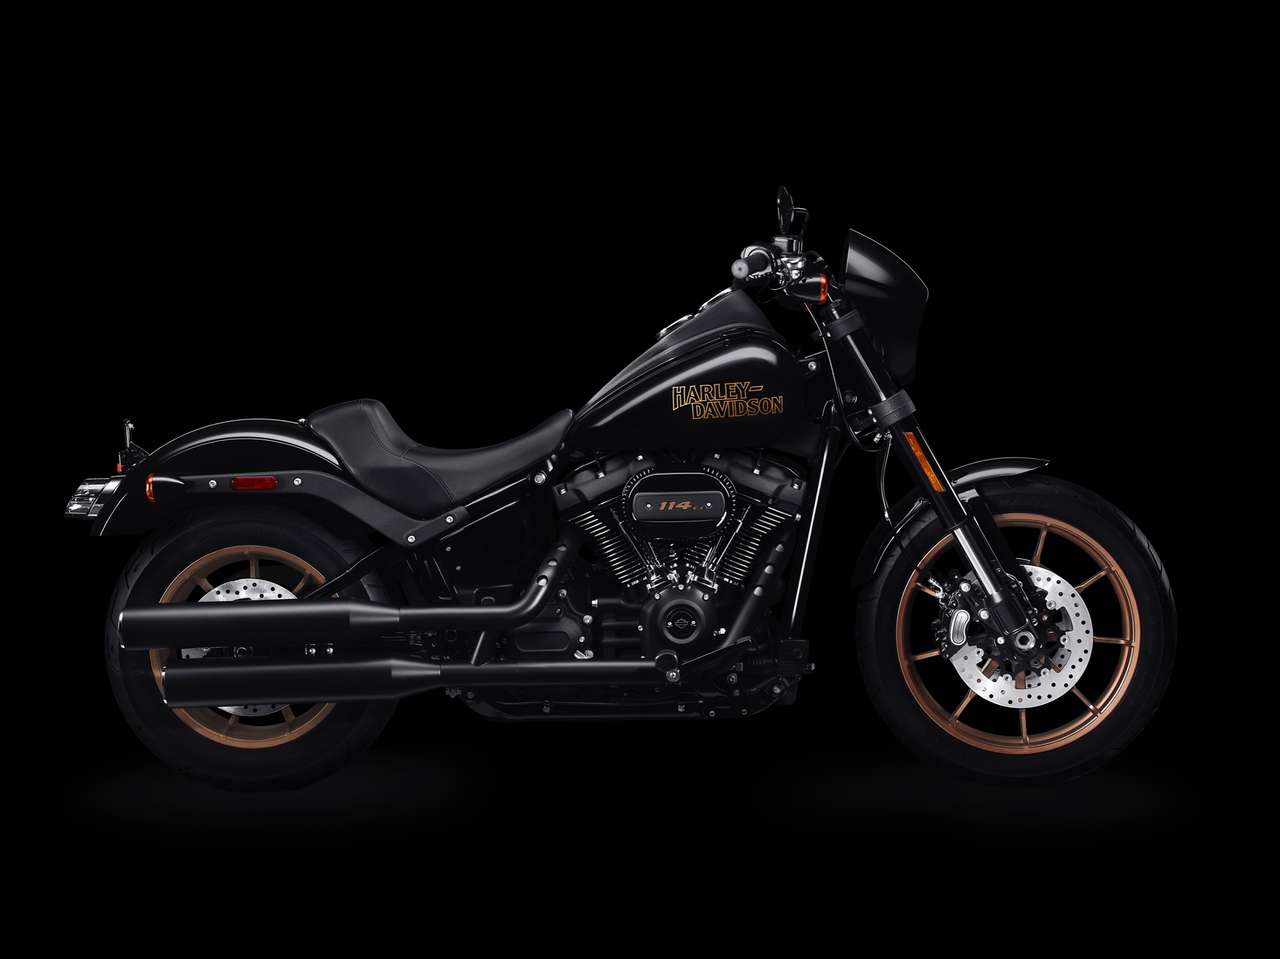 Harley Davidson Low Rider S Mehr Power Fur 2020